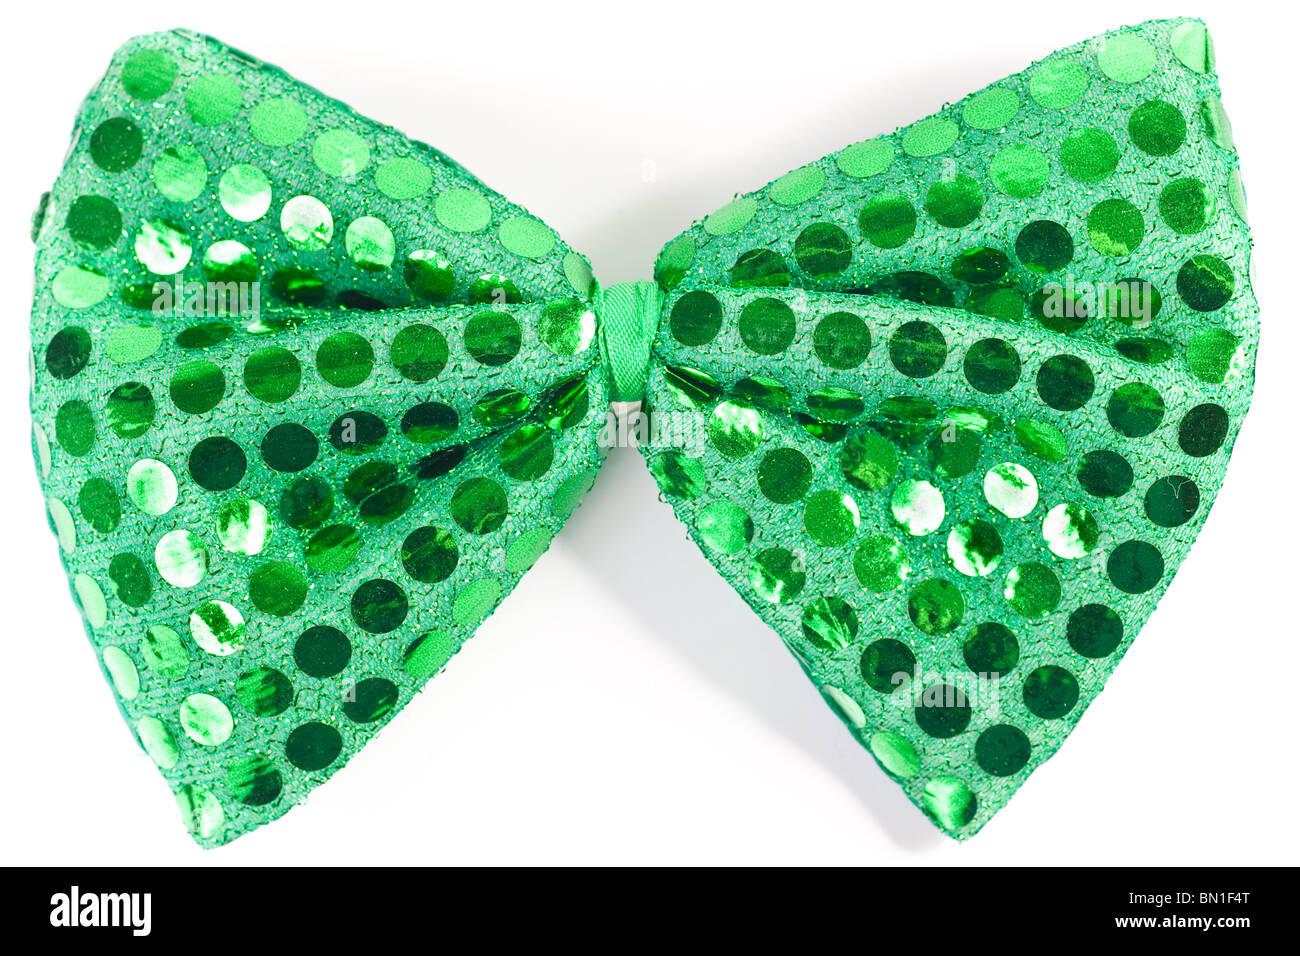 Nahaufnahme von einer grünen Pailletten Fliege, verwendet vor allem während der St. Patricks Day, Isolated on White. Stockfoto